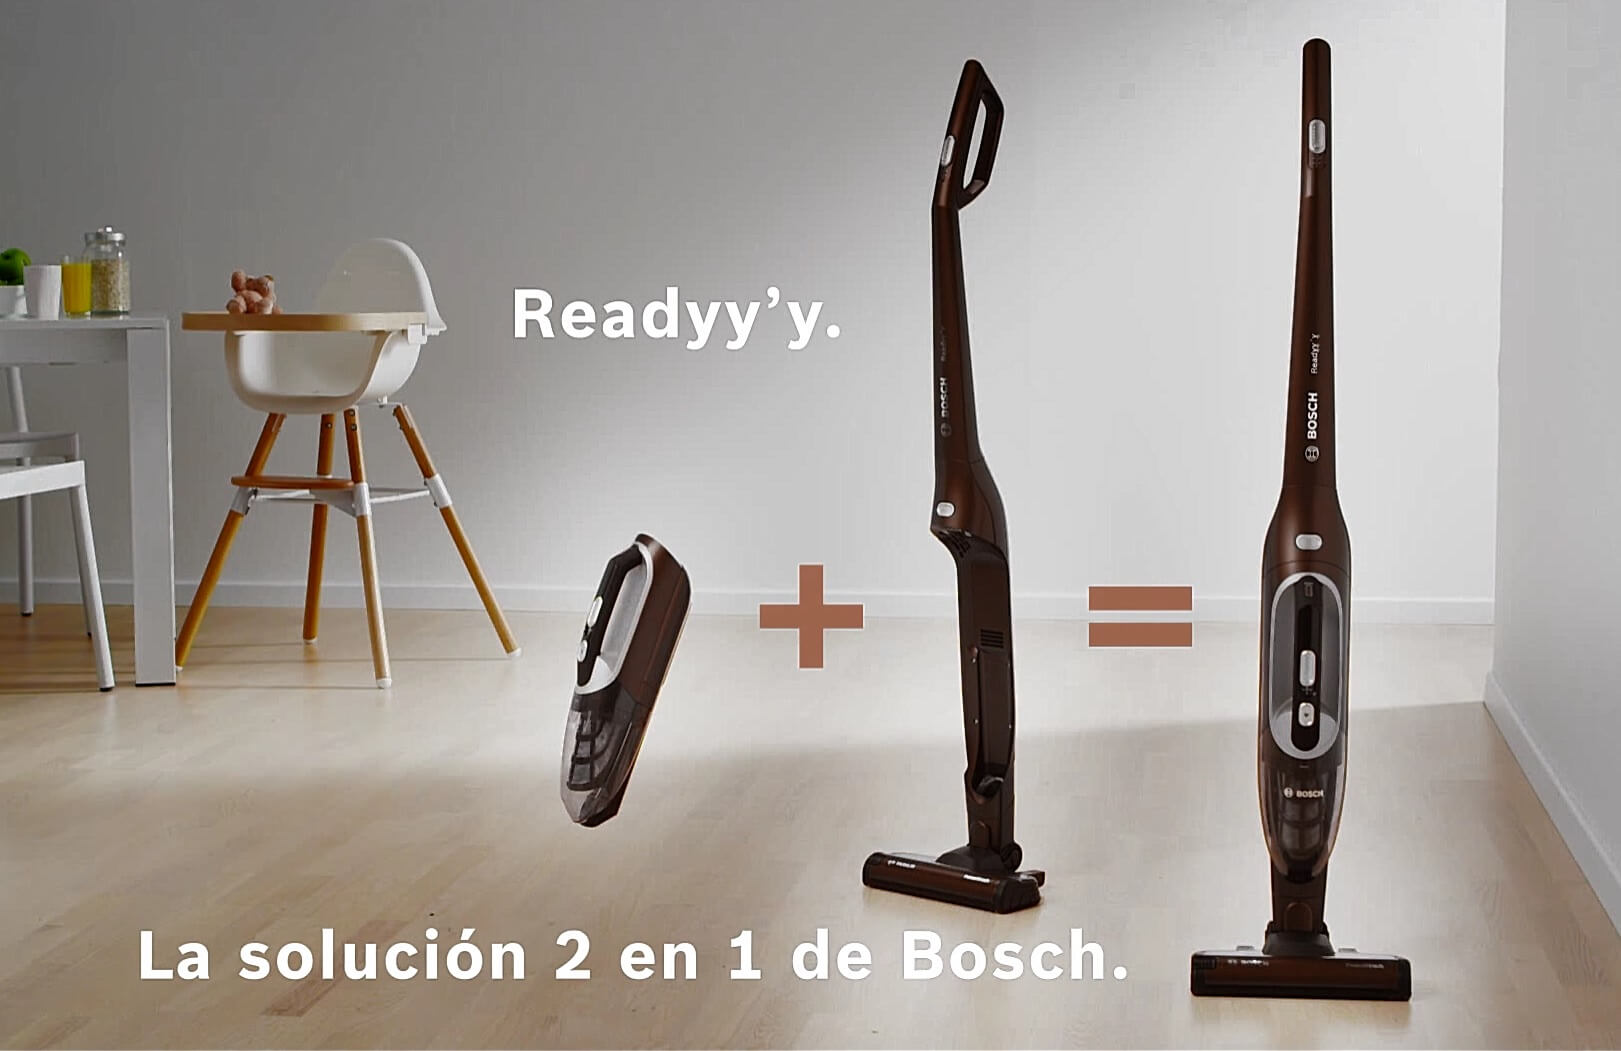 Bosch Readyy'y